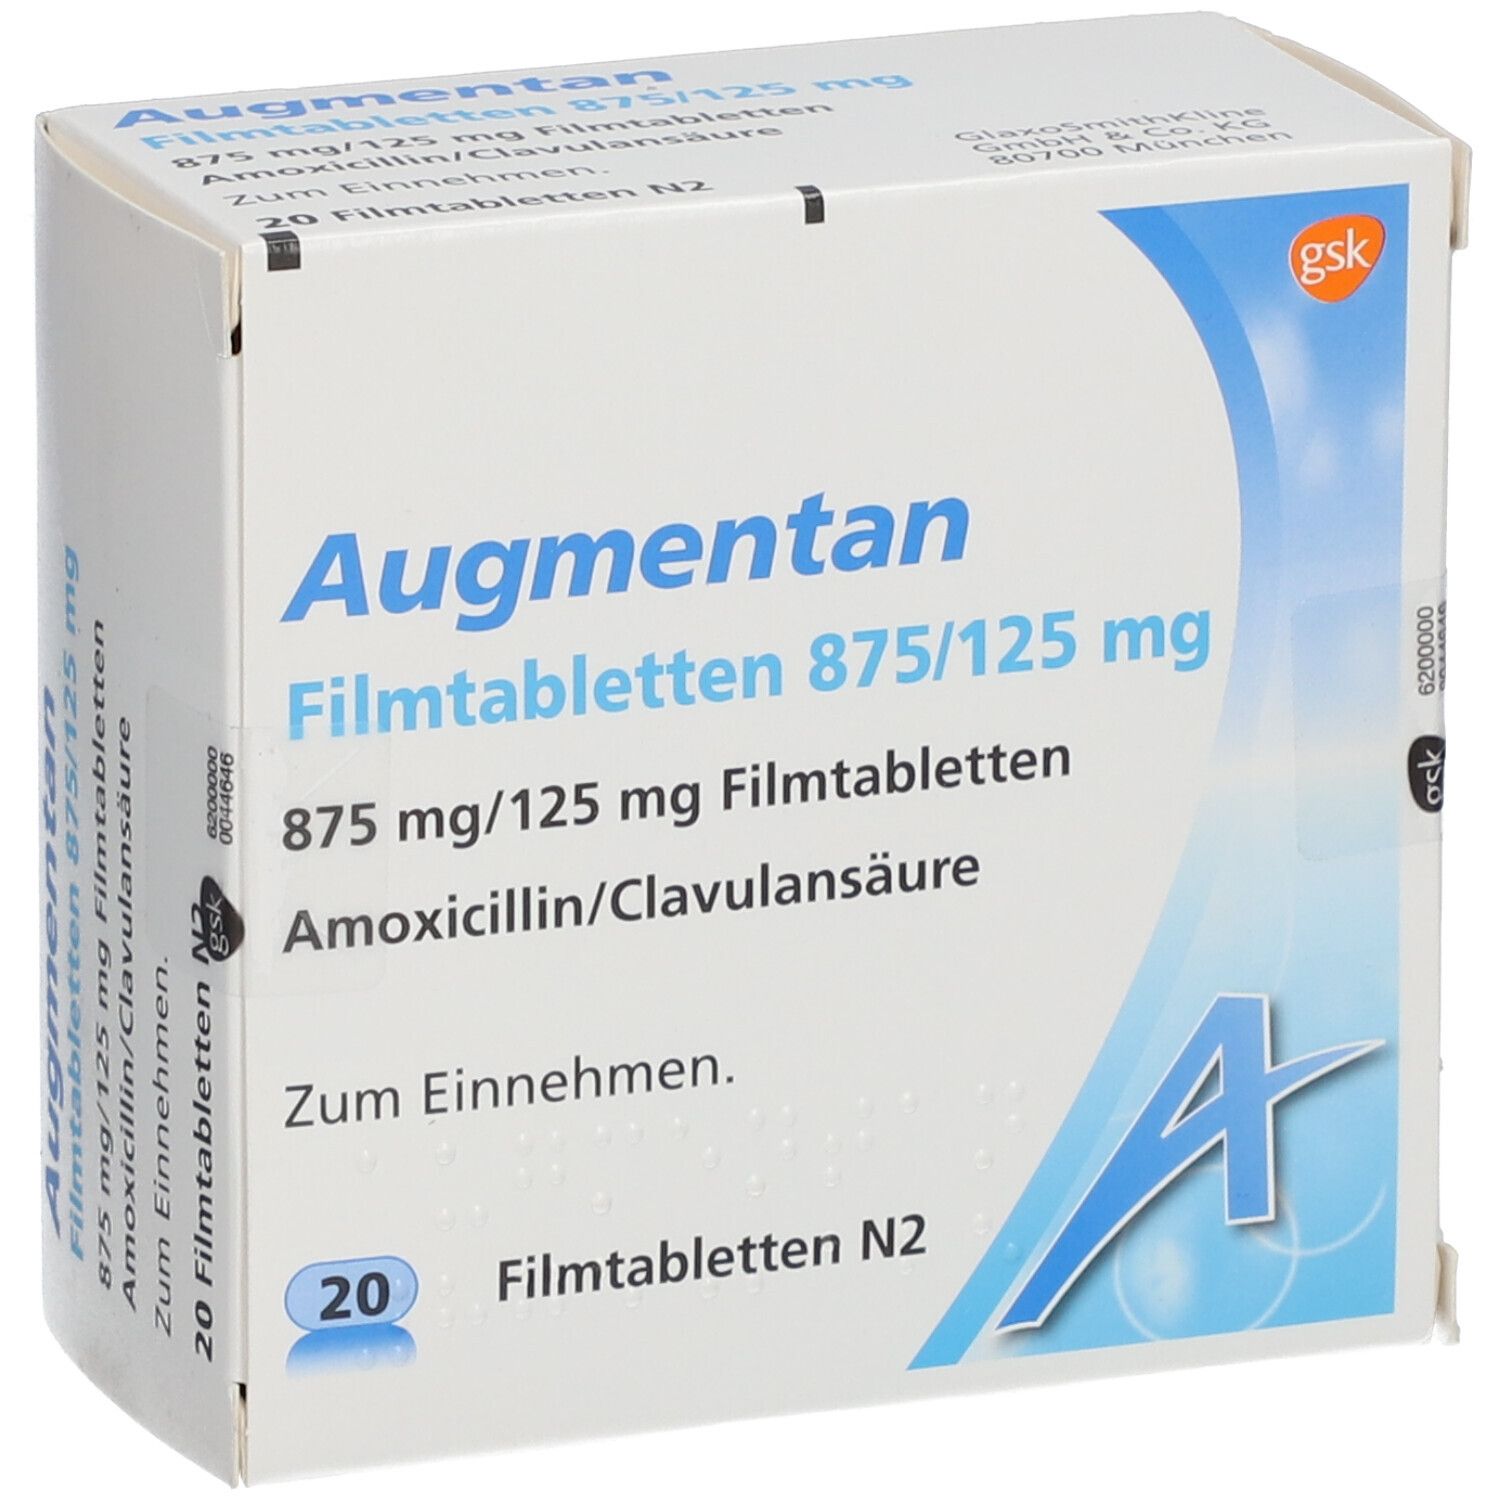 Augmentan® 875/125 mg